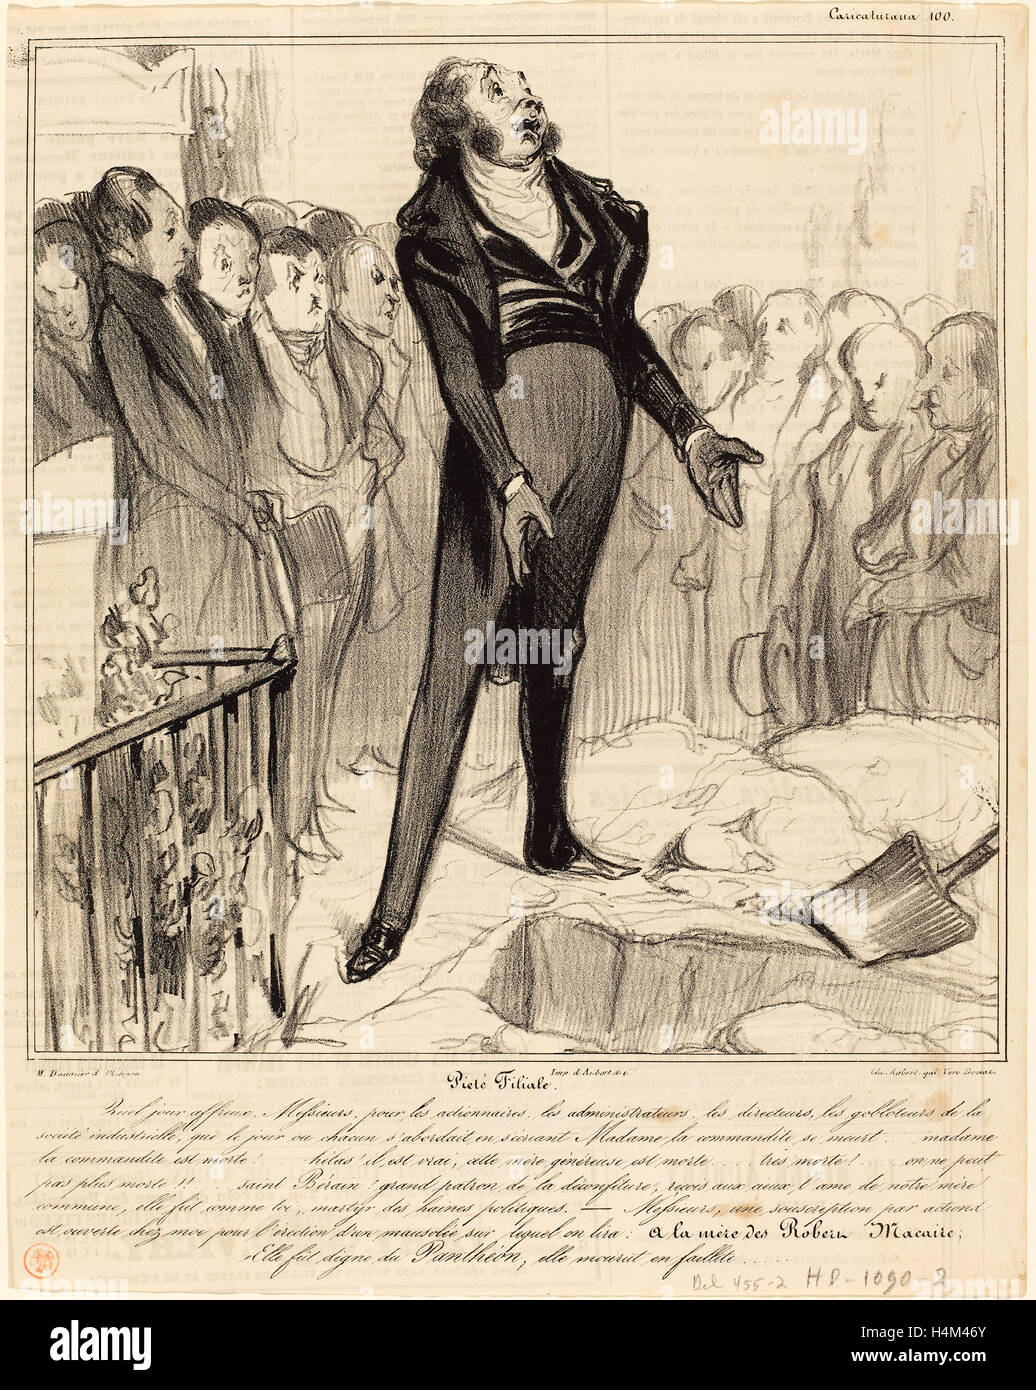 Honoré Daumier (French, 1808 - 1879), Piétié Filiale, 1838, lithograph on newsprint Stock Photo